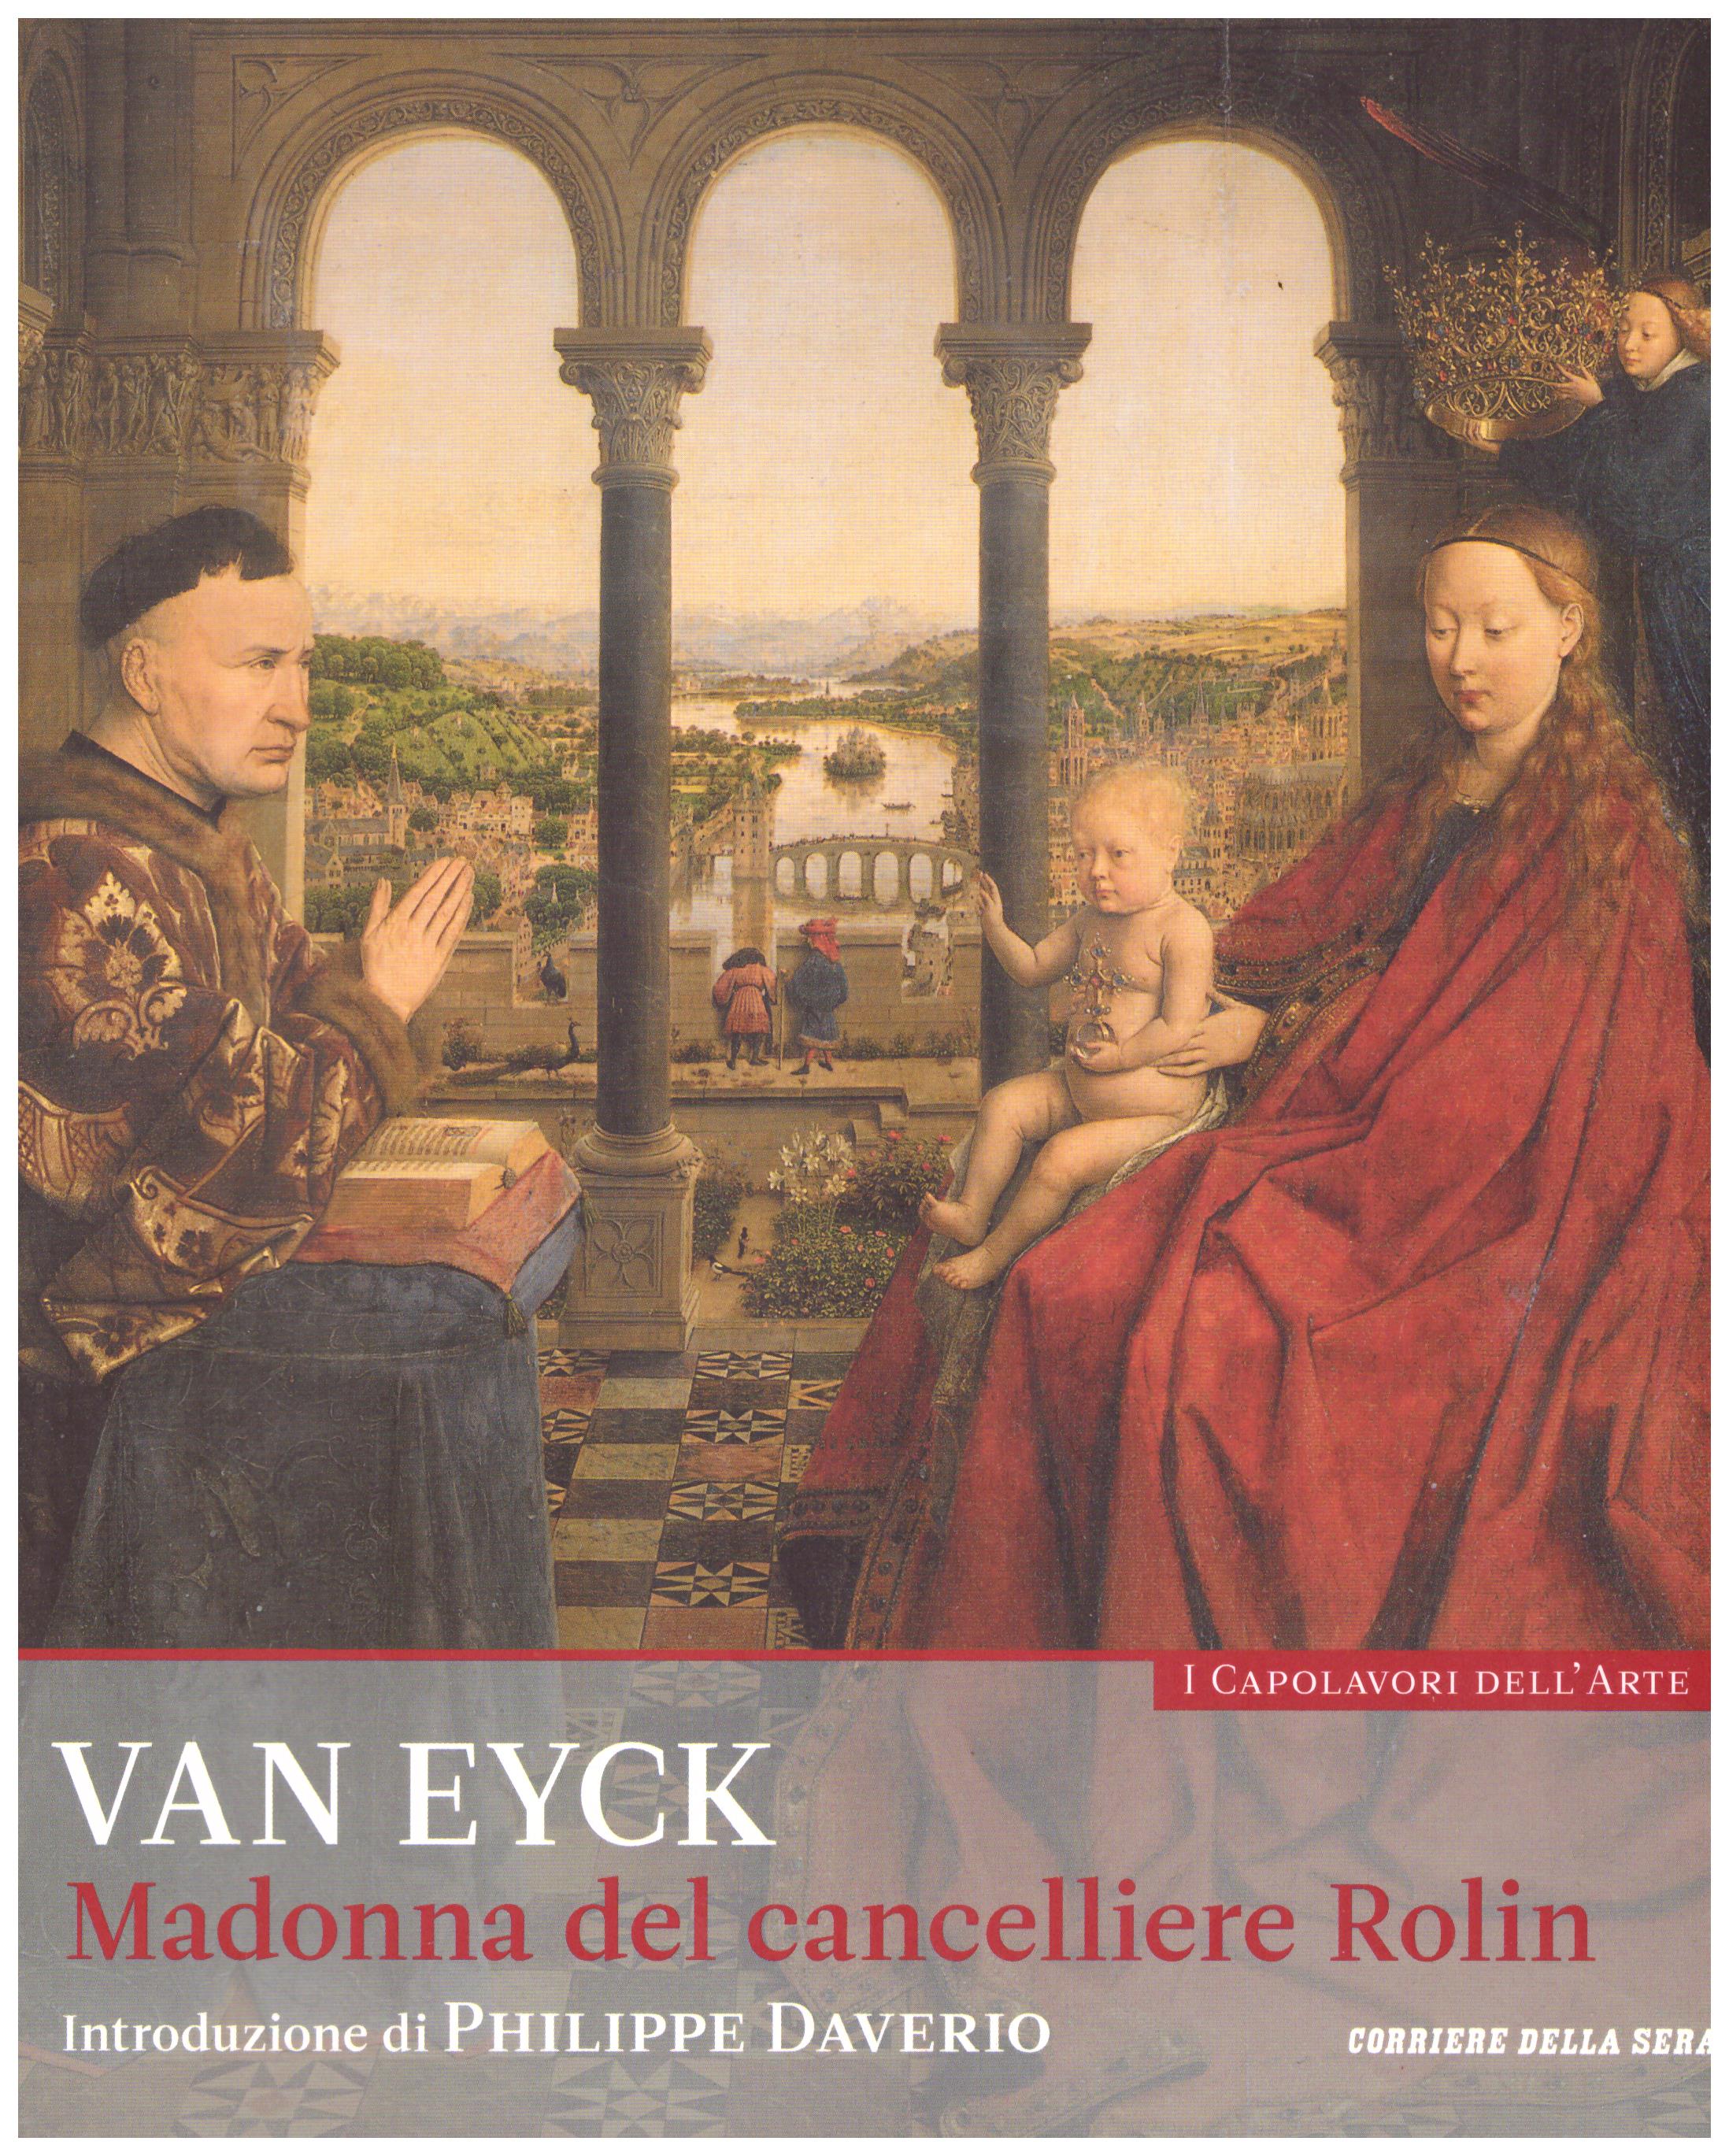 Titolo: I capolavori dell'arte, Van Eyck n.28 Autore : AA.VV.   Editore: education,it/corriere della sera, 2015